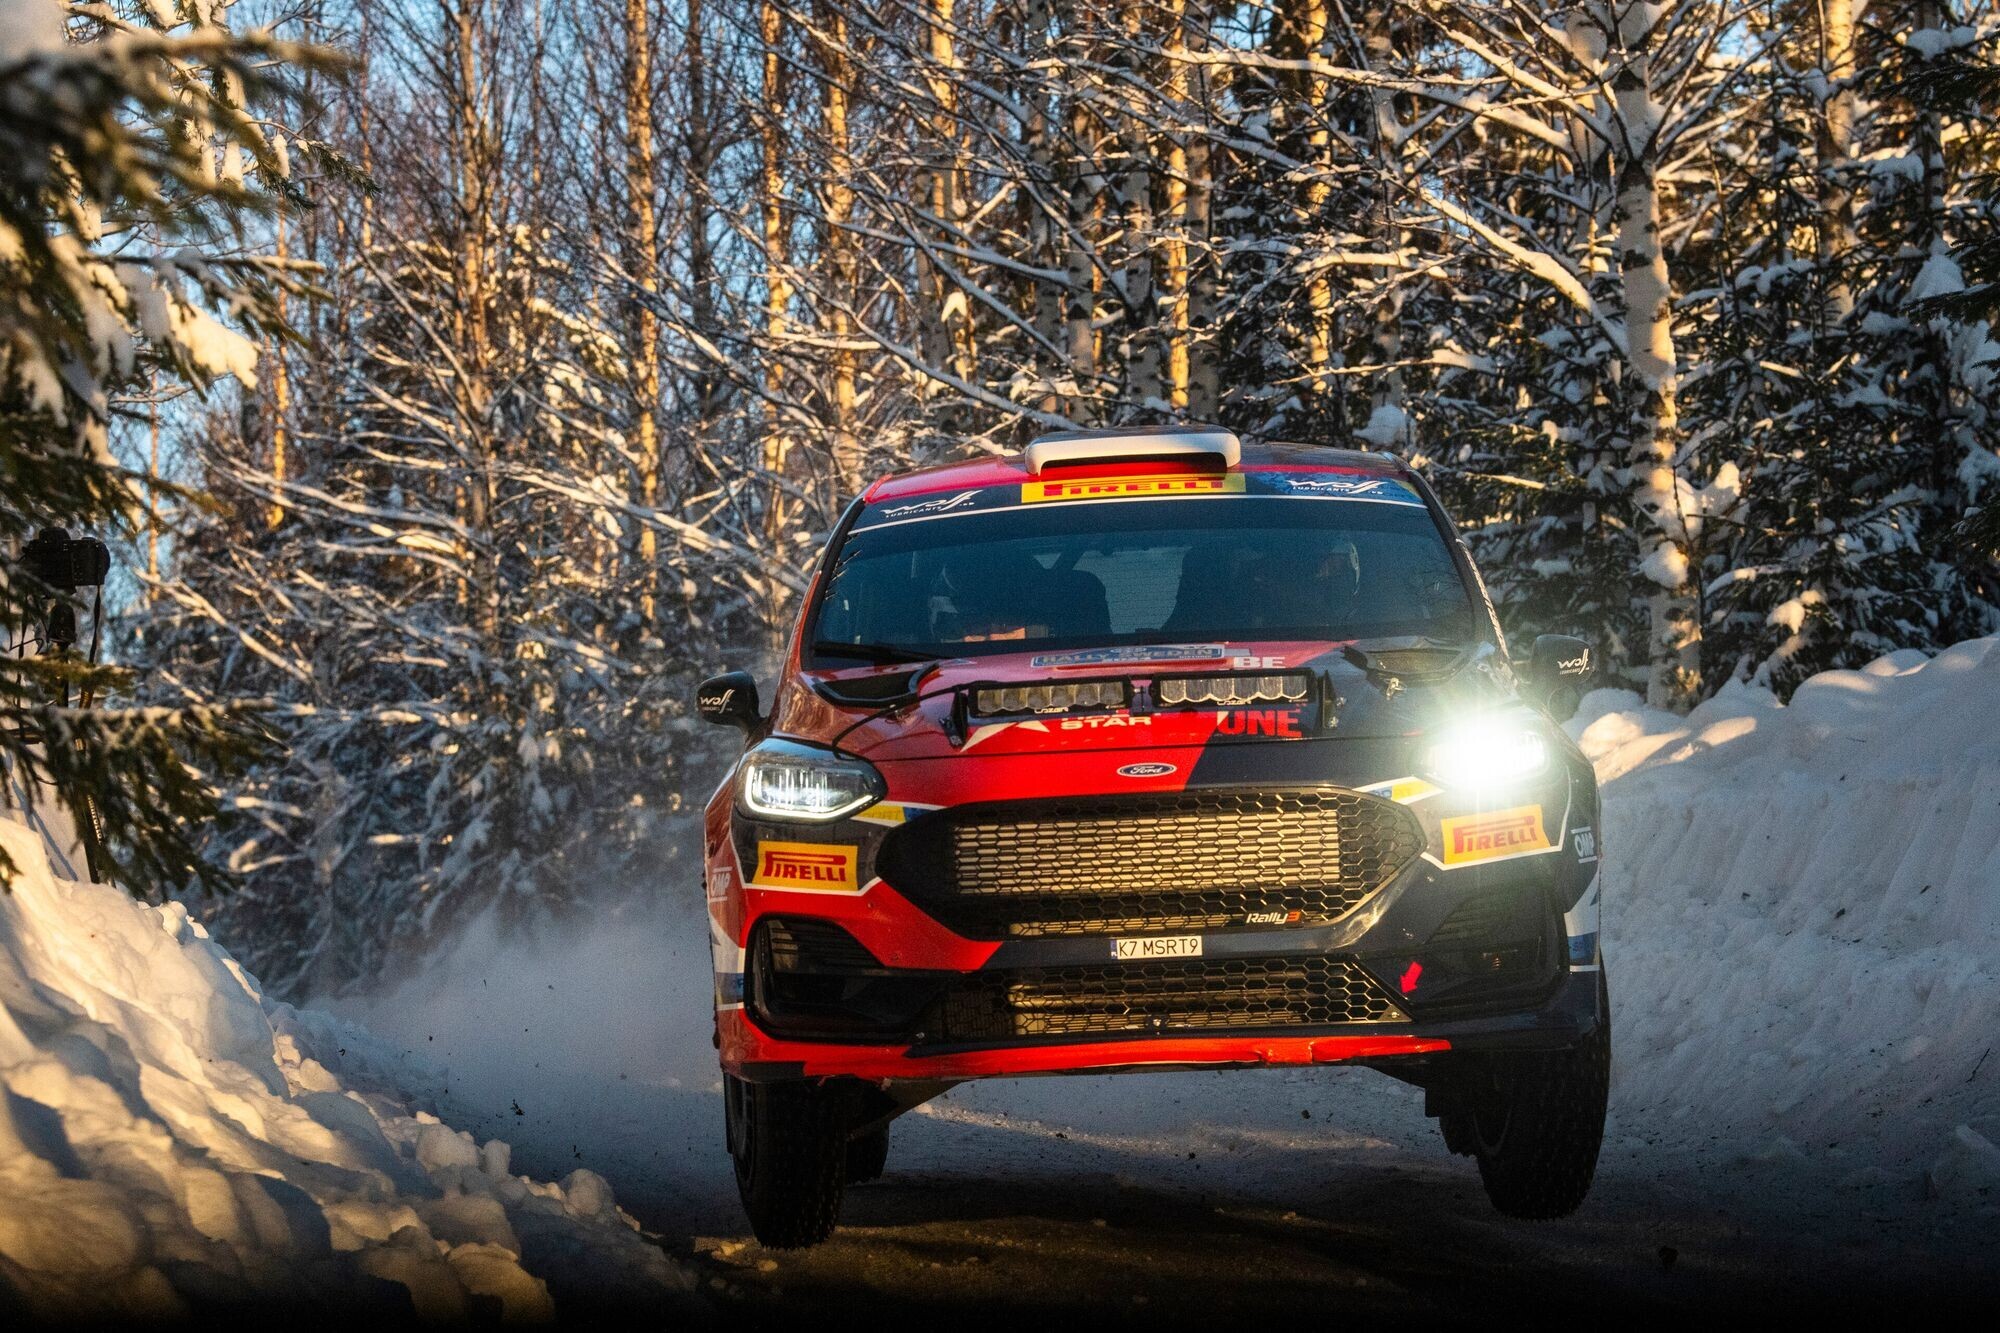 Piloții de raliuri estonieni au obținut două podiumuri în Suedia: Linnamäe/Morgan în WRC2 și Jorgensson/Oja în JWRC